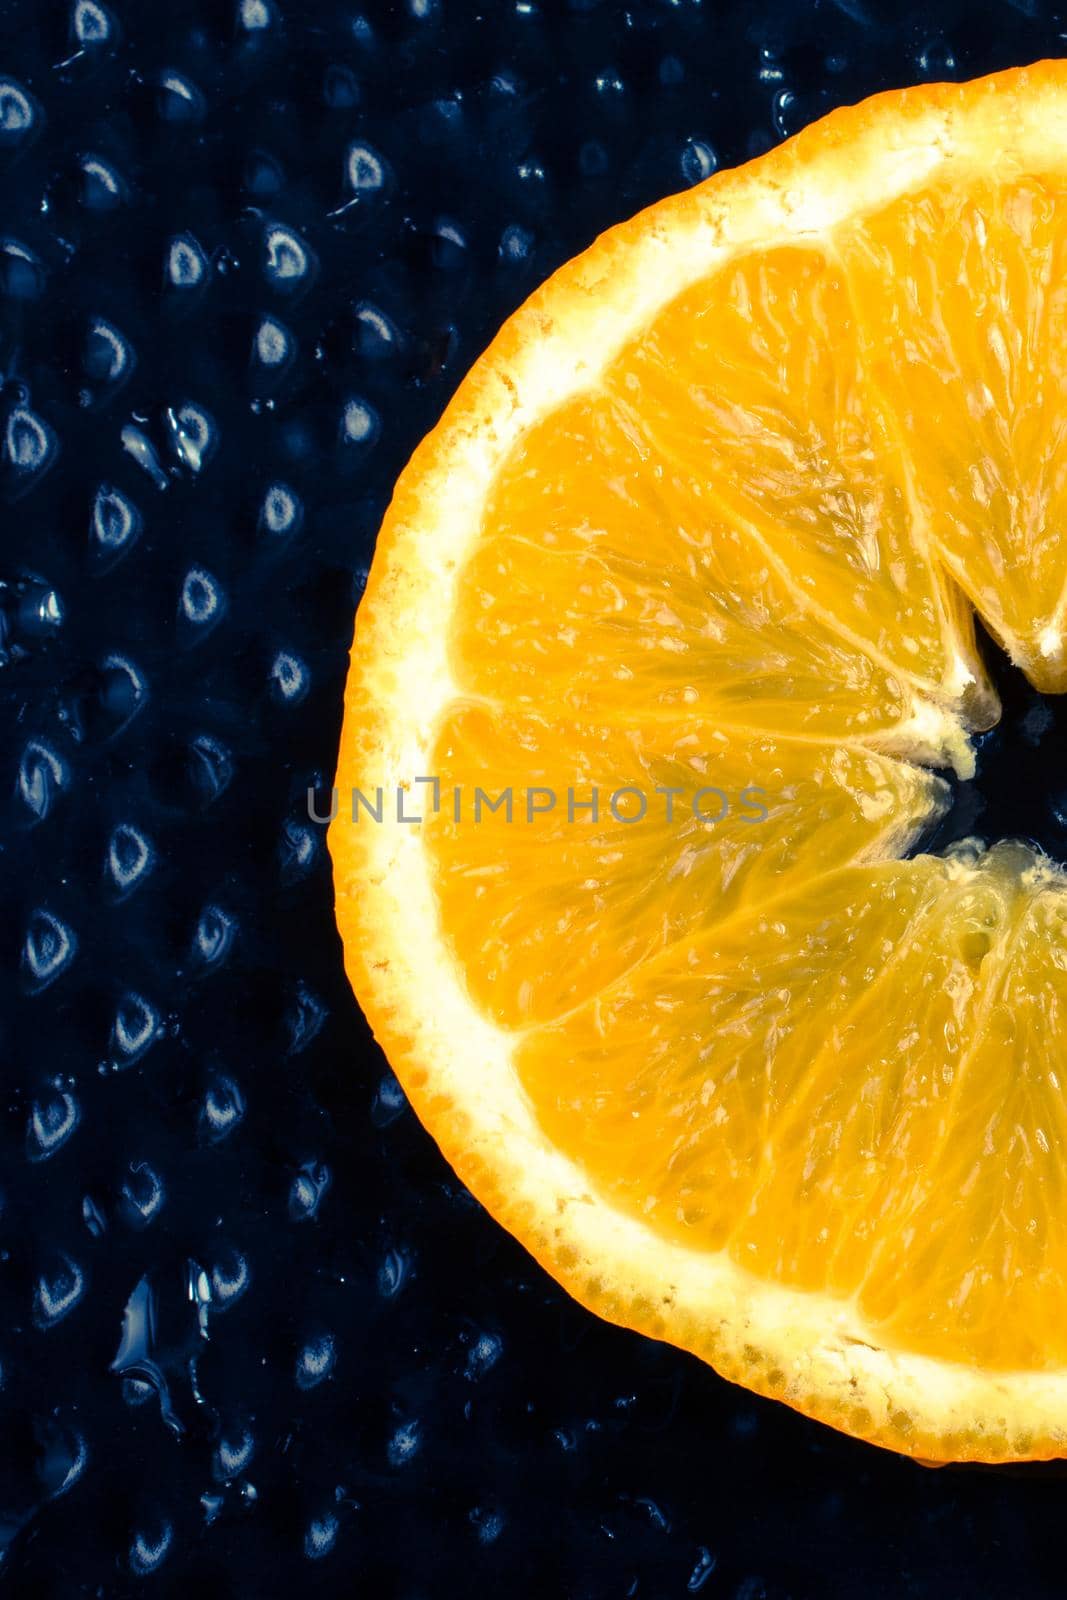 A view of a juicy ripe cut orange fruit by berkay